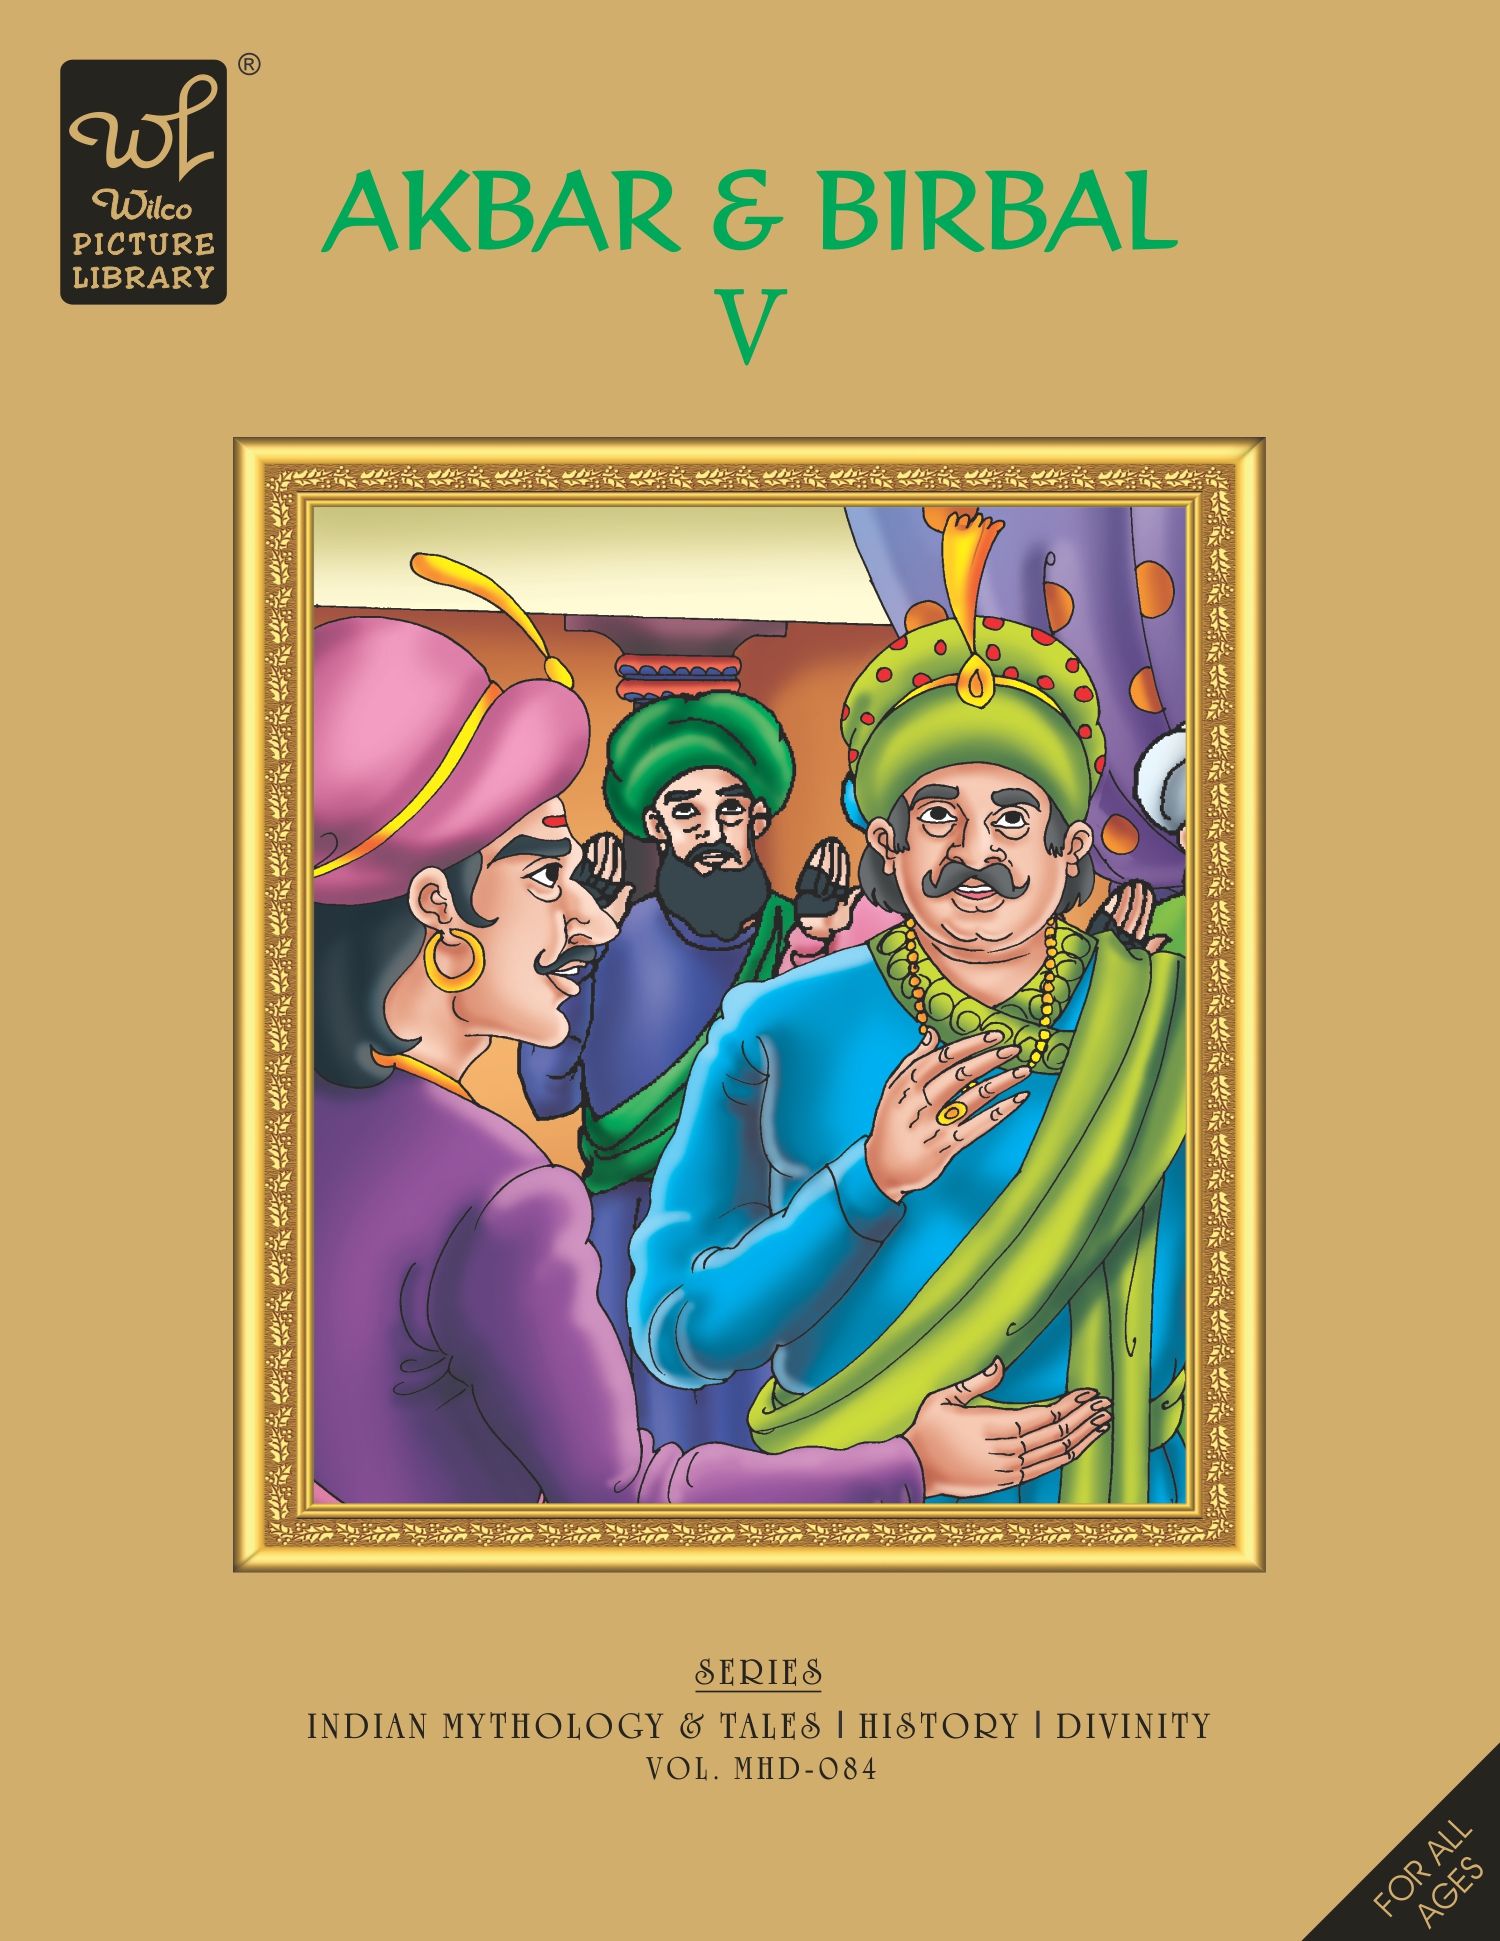 WPL:Akbar & Birbal - V